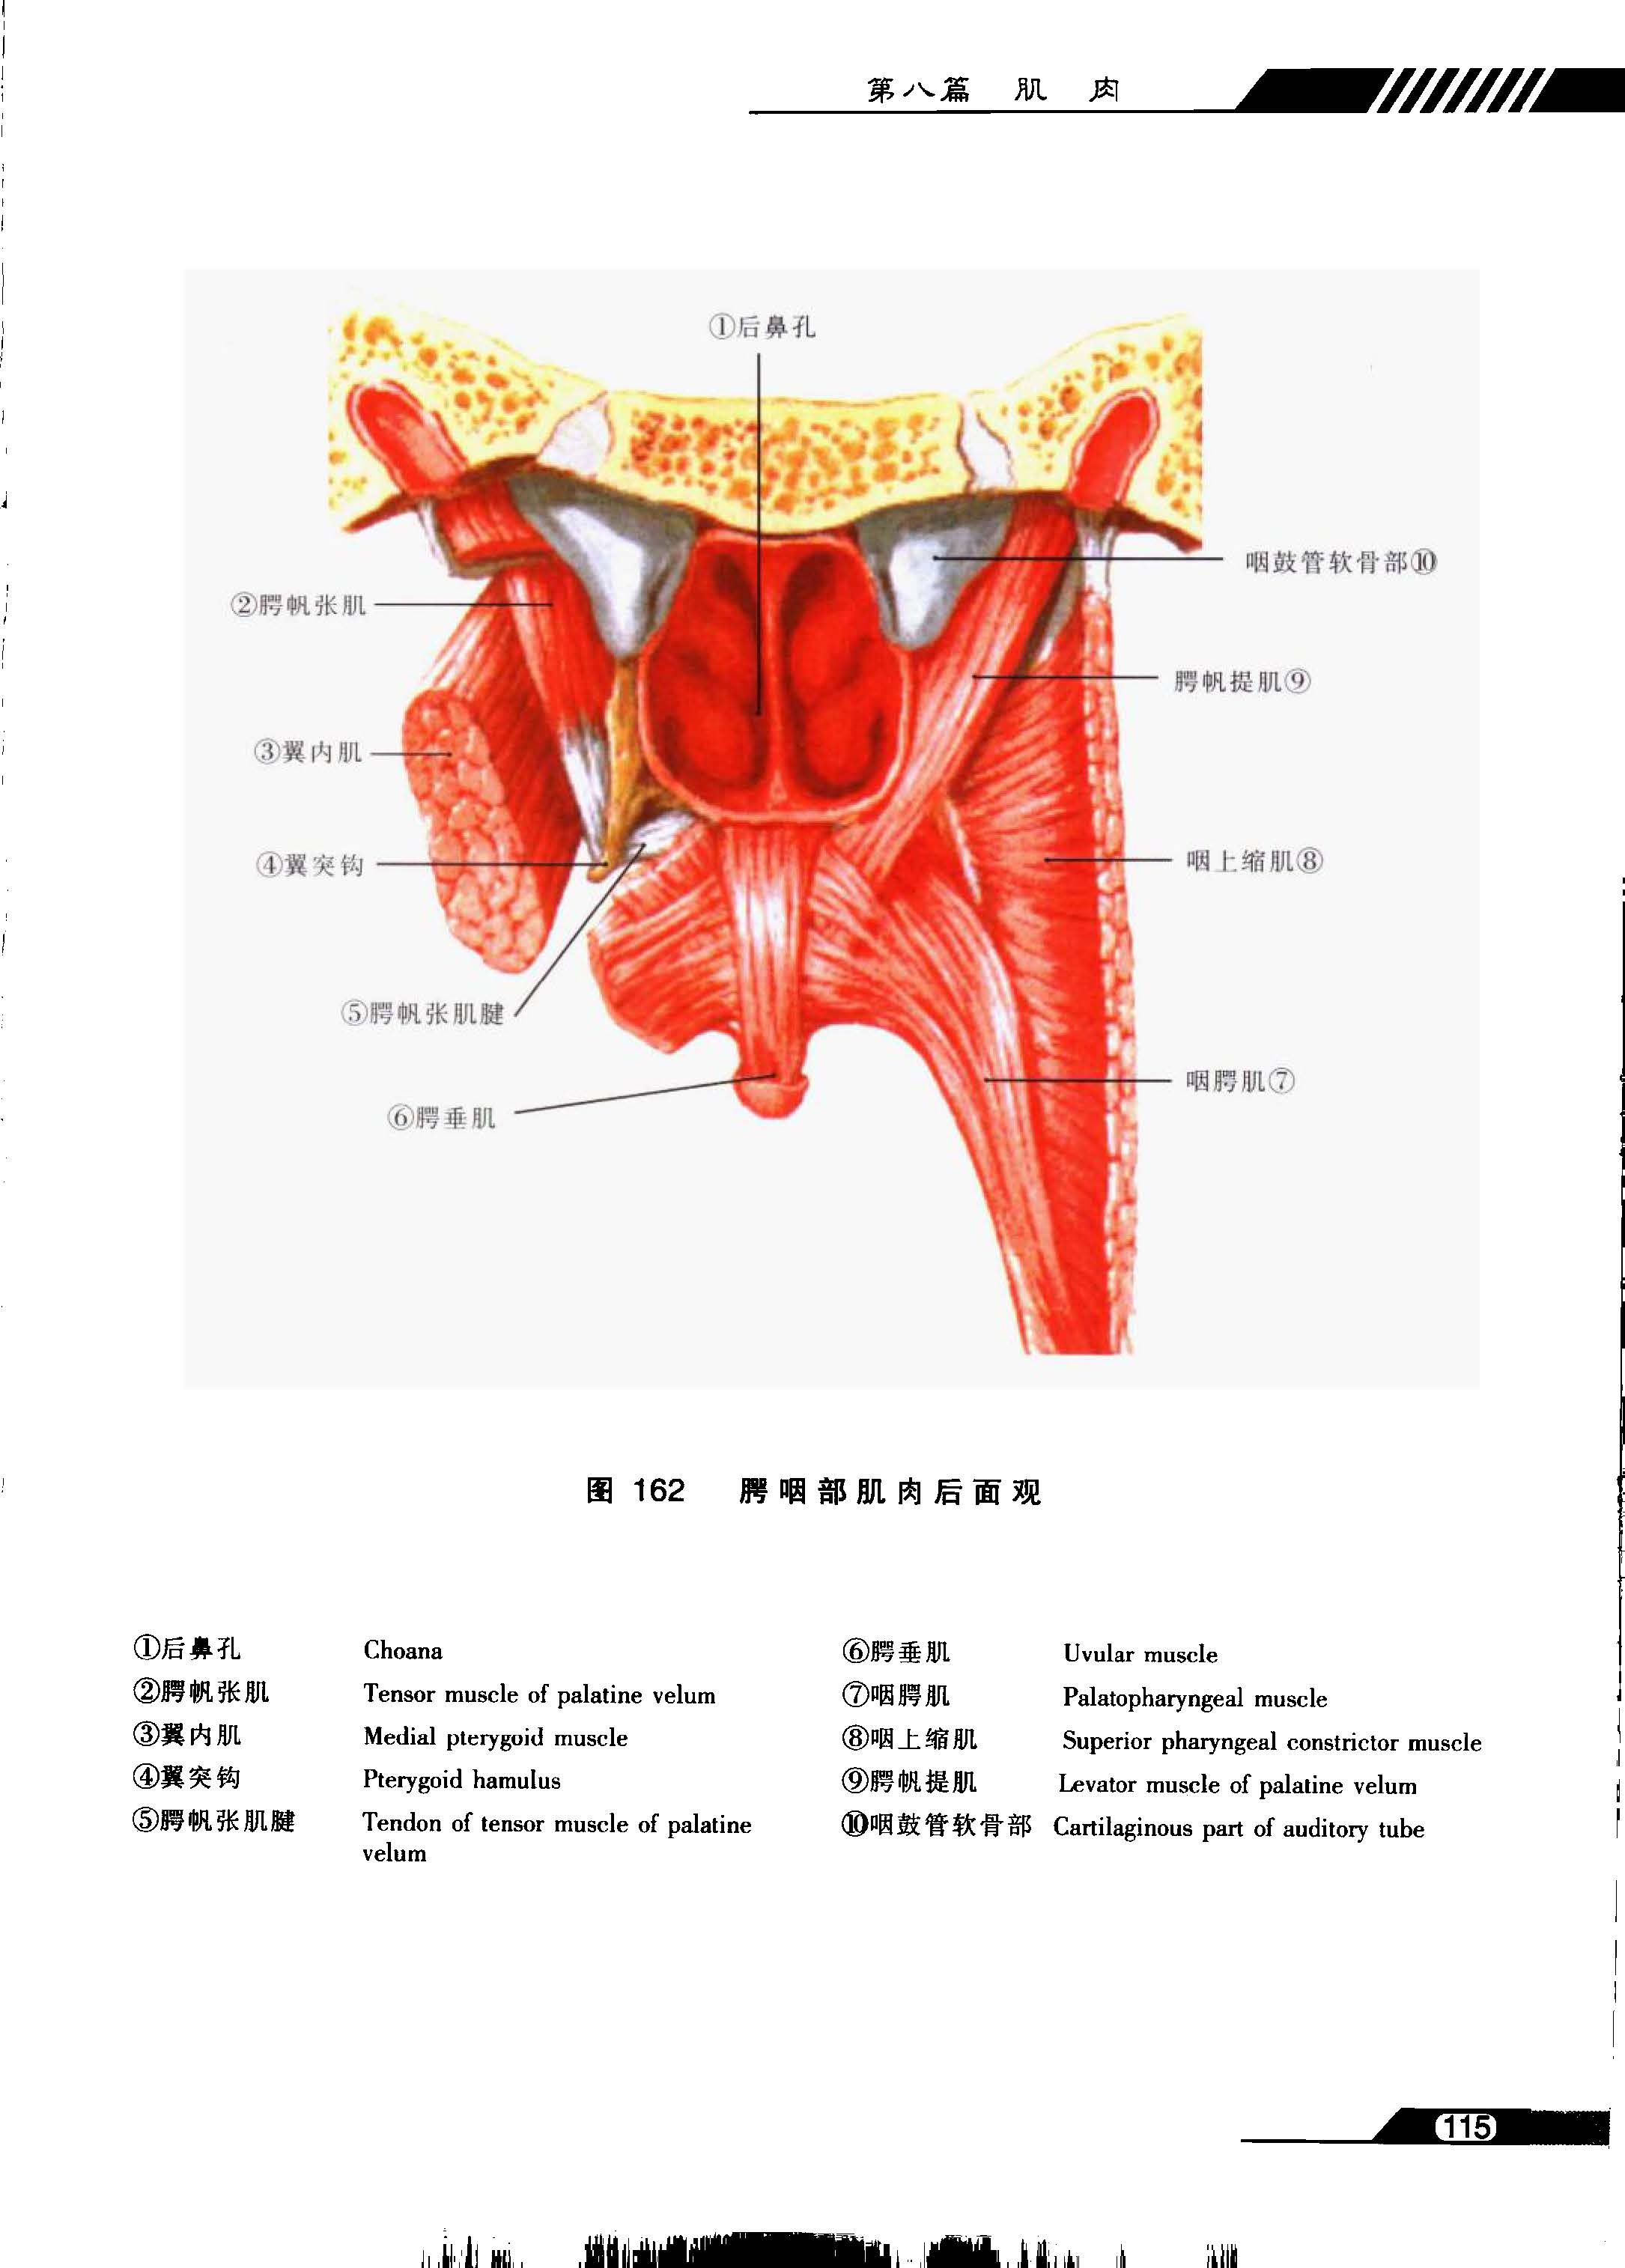 鼻咽部的CT解剖 _咽部ct解剖圖 - 可爾網